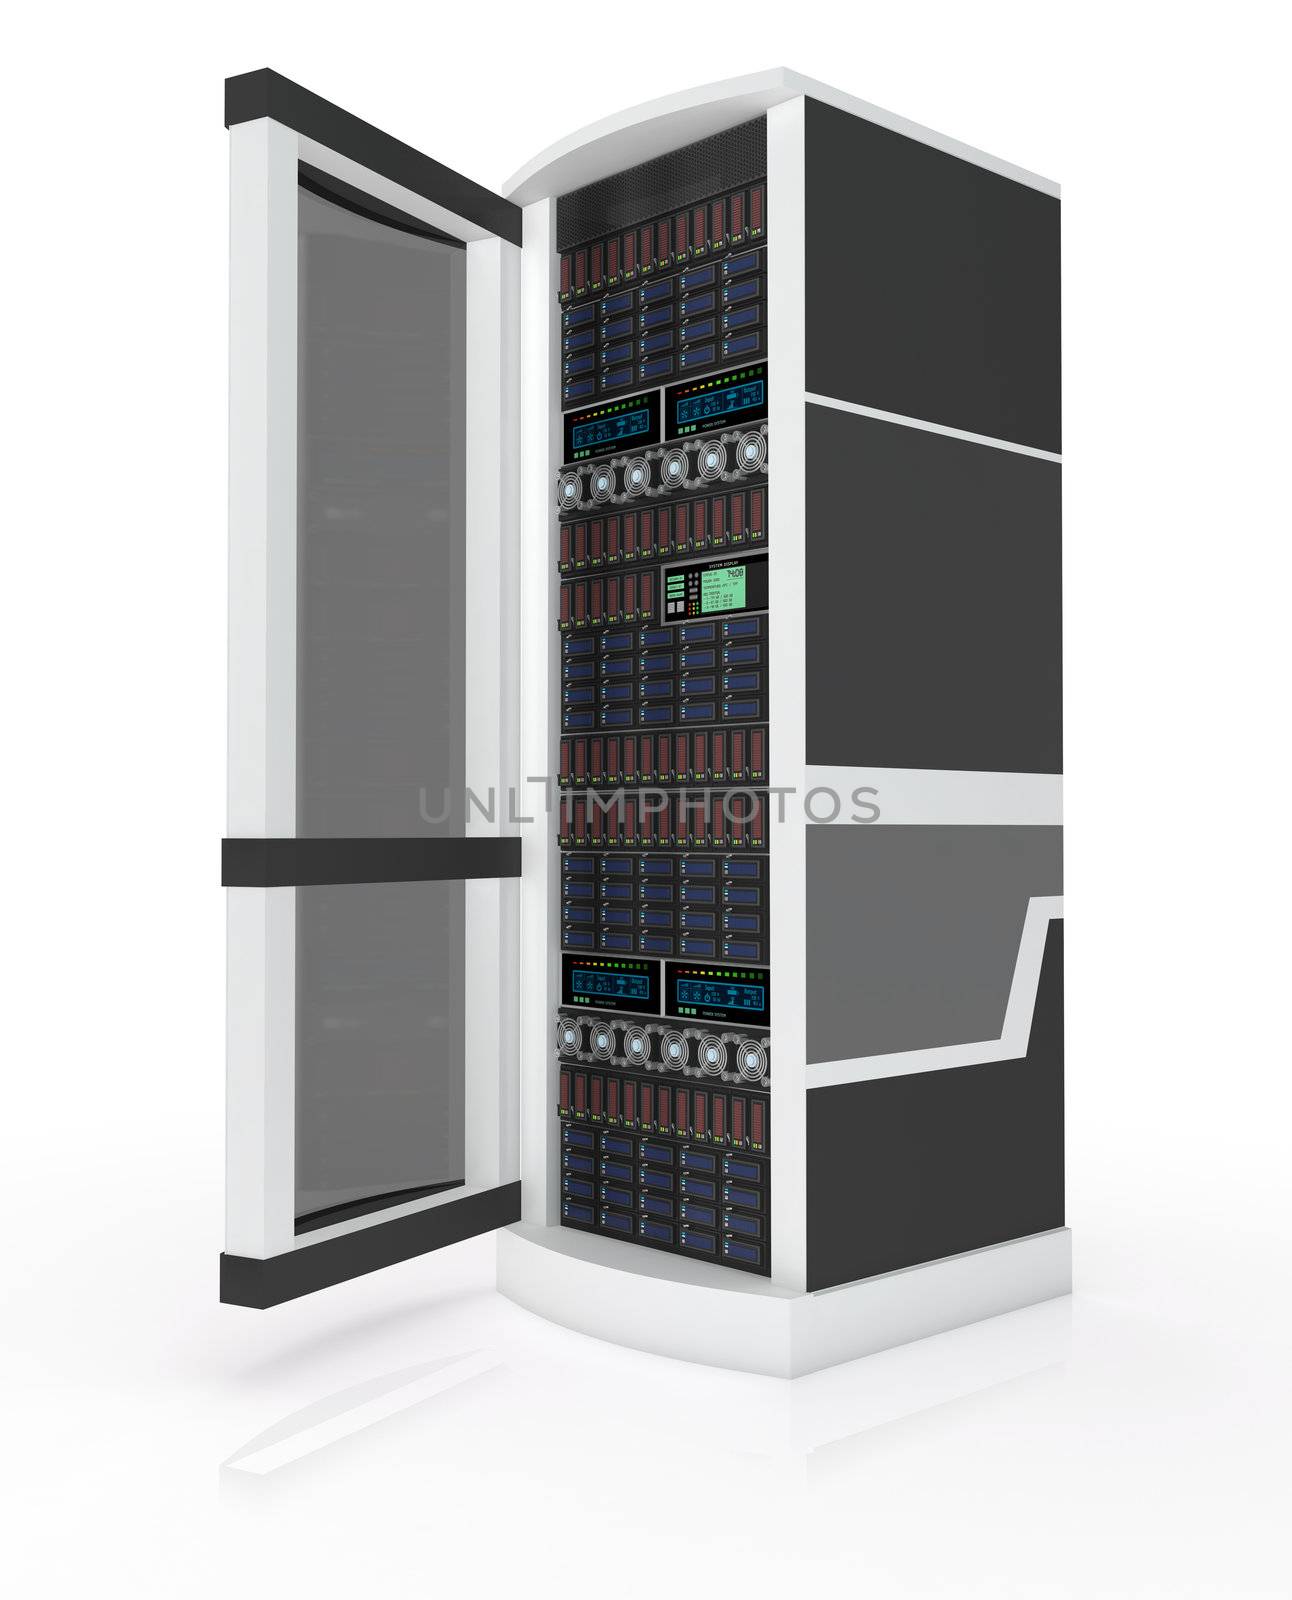 Server rack with open door by Shevlad